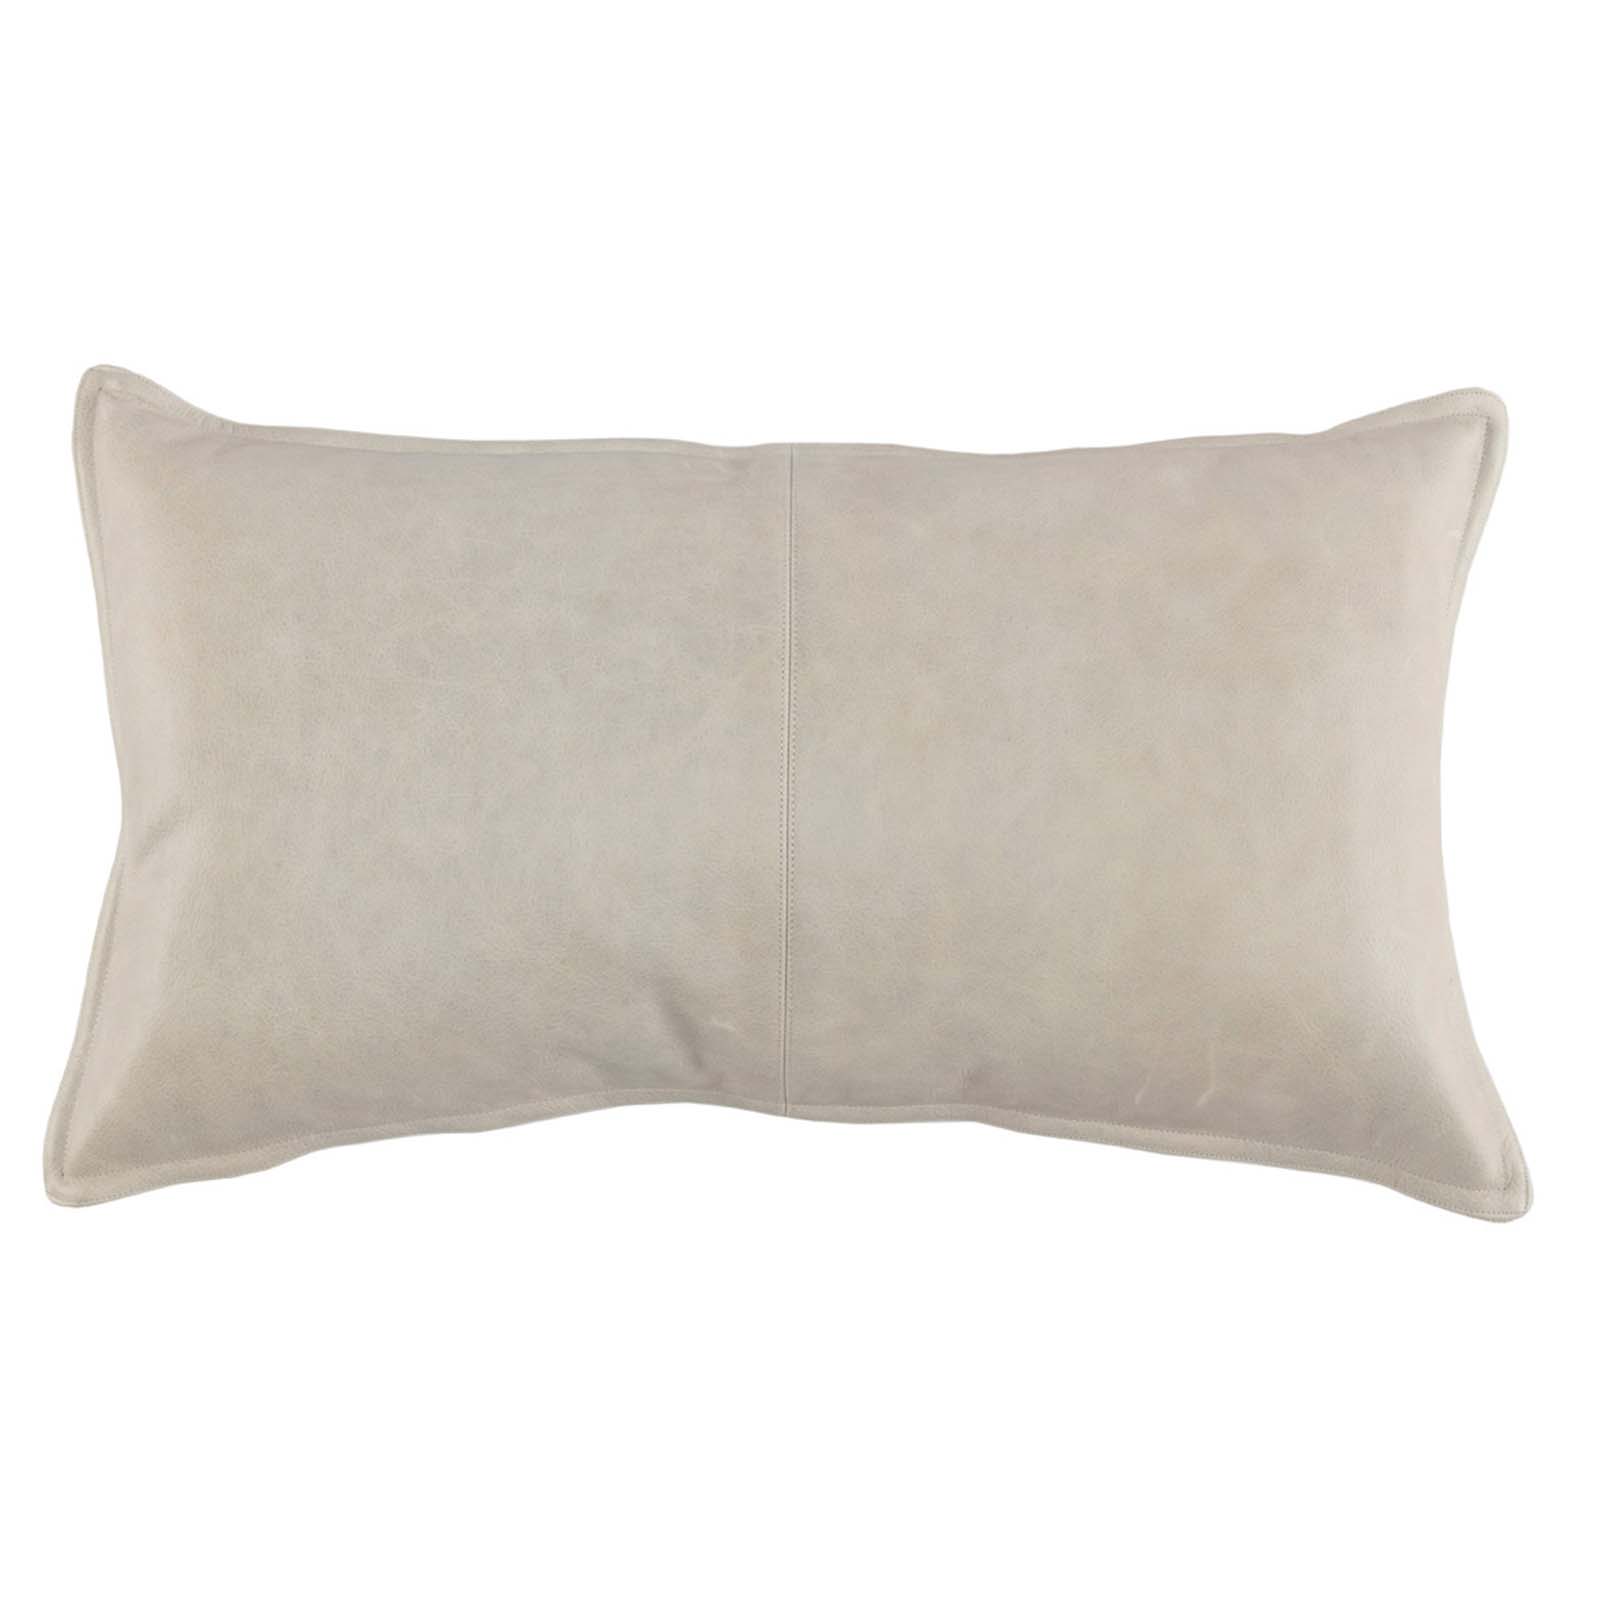 14" x 26" Pillow